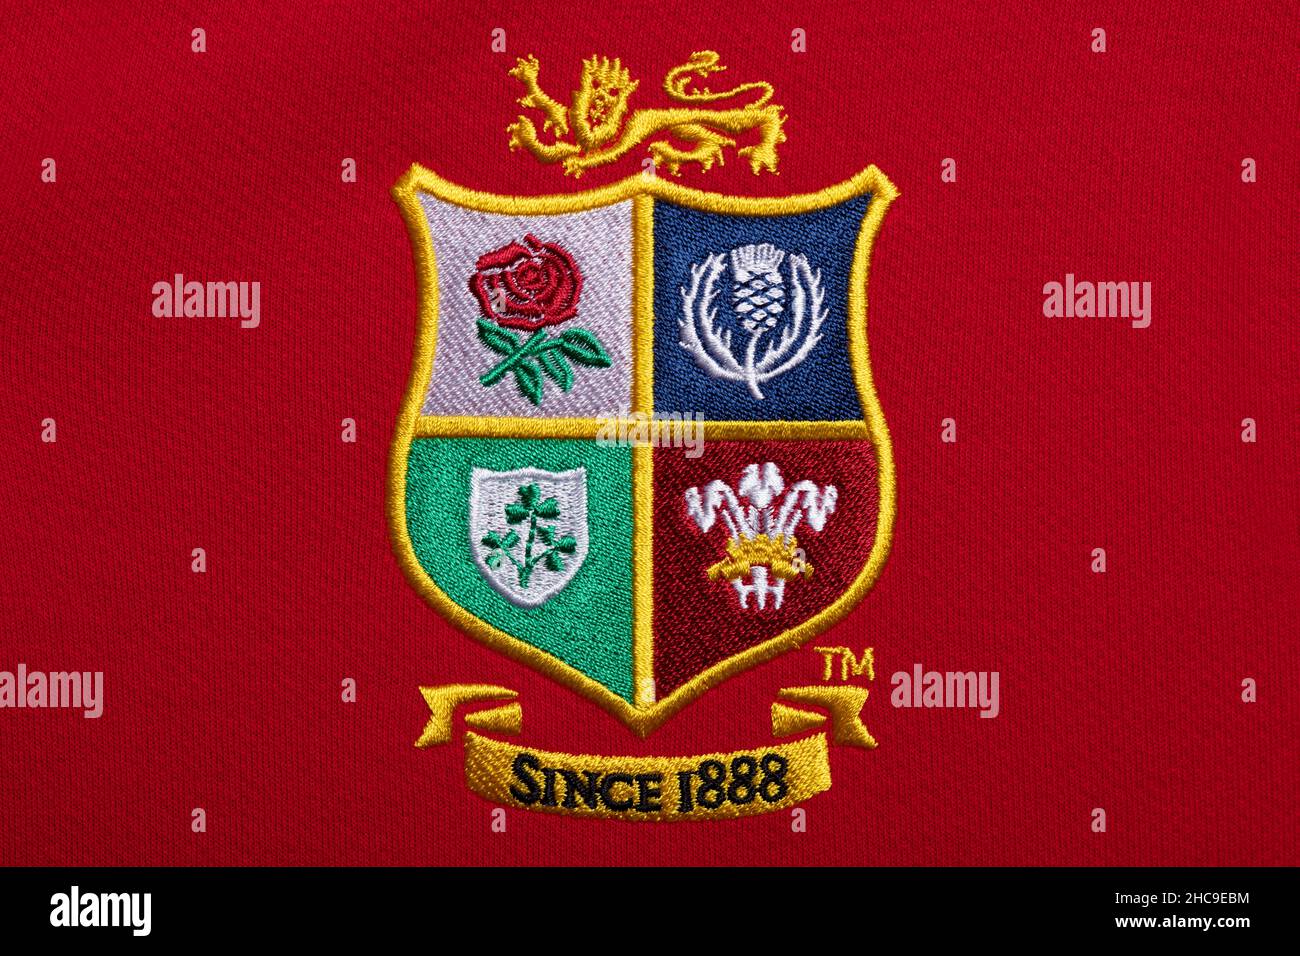 Gros plan sur le maillot de l'équipe de rugby des Lions britanniques et irlandais Banque D'Images